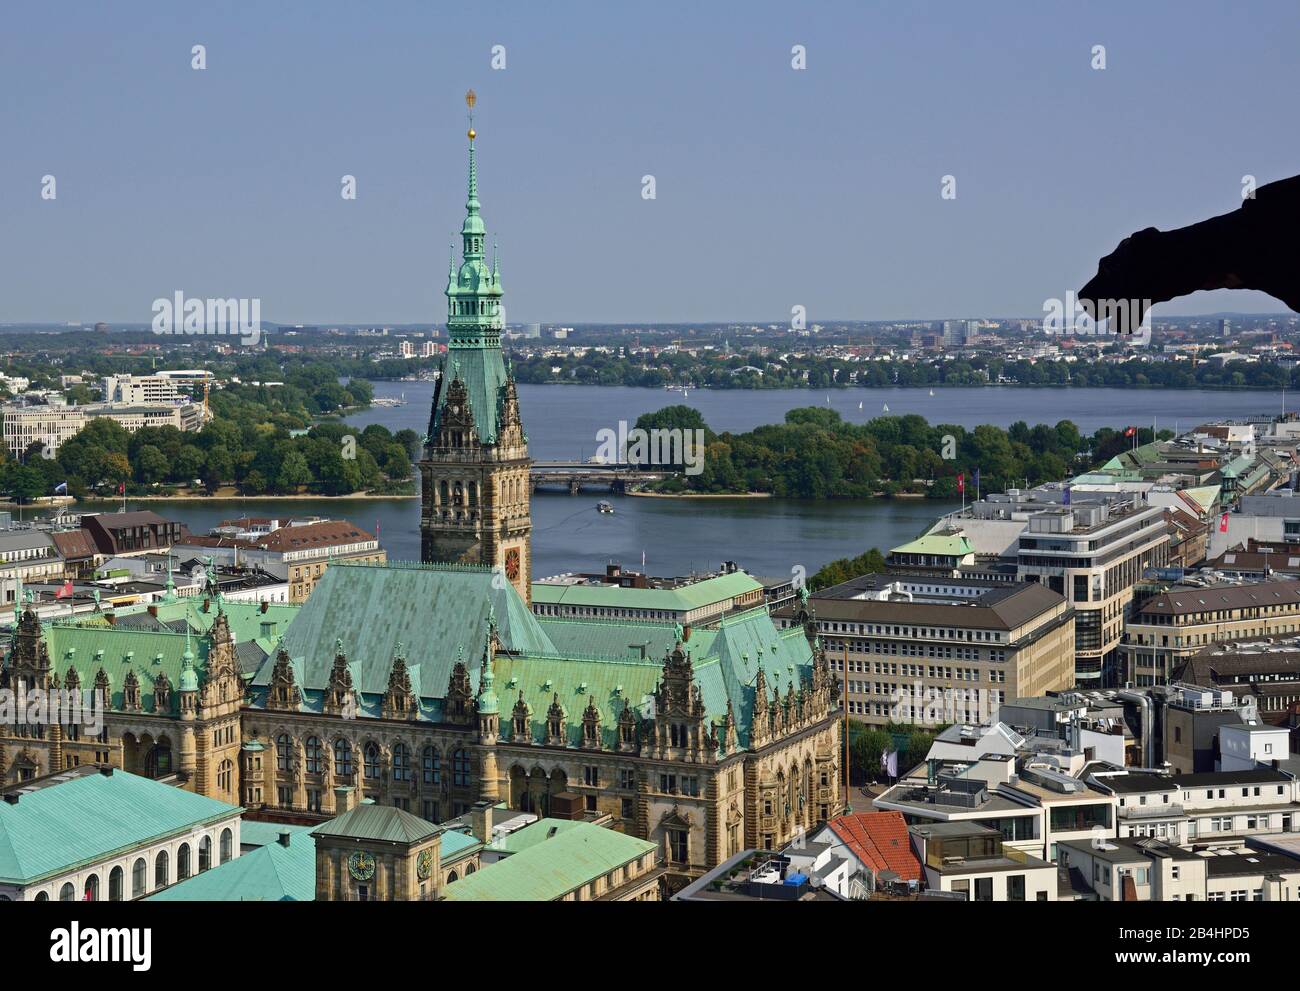 Europa, Alemania, Hamburgo, Ciudad, vista desde arriba en Rathaus, Binnenalster y Aussenalster, Foto de stock